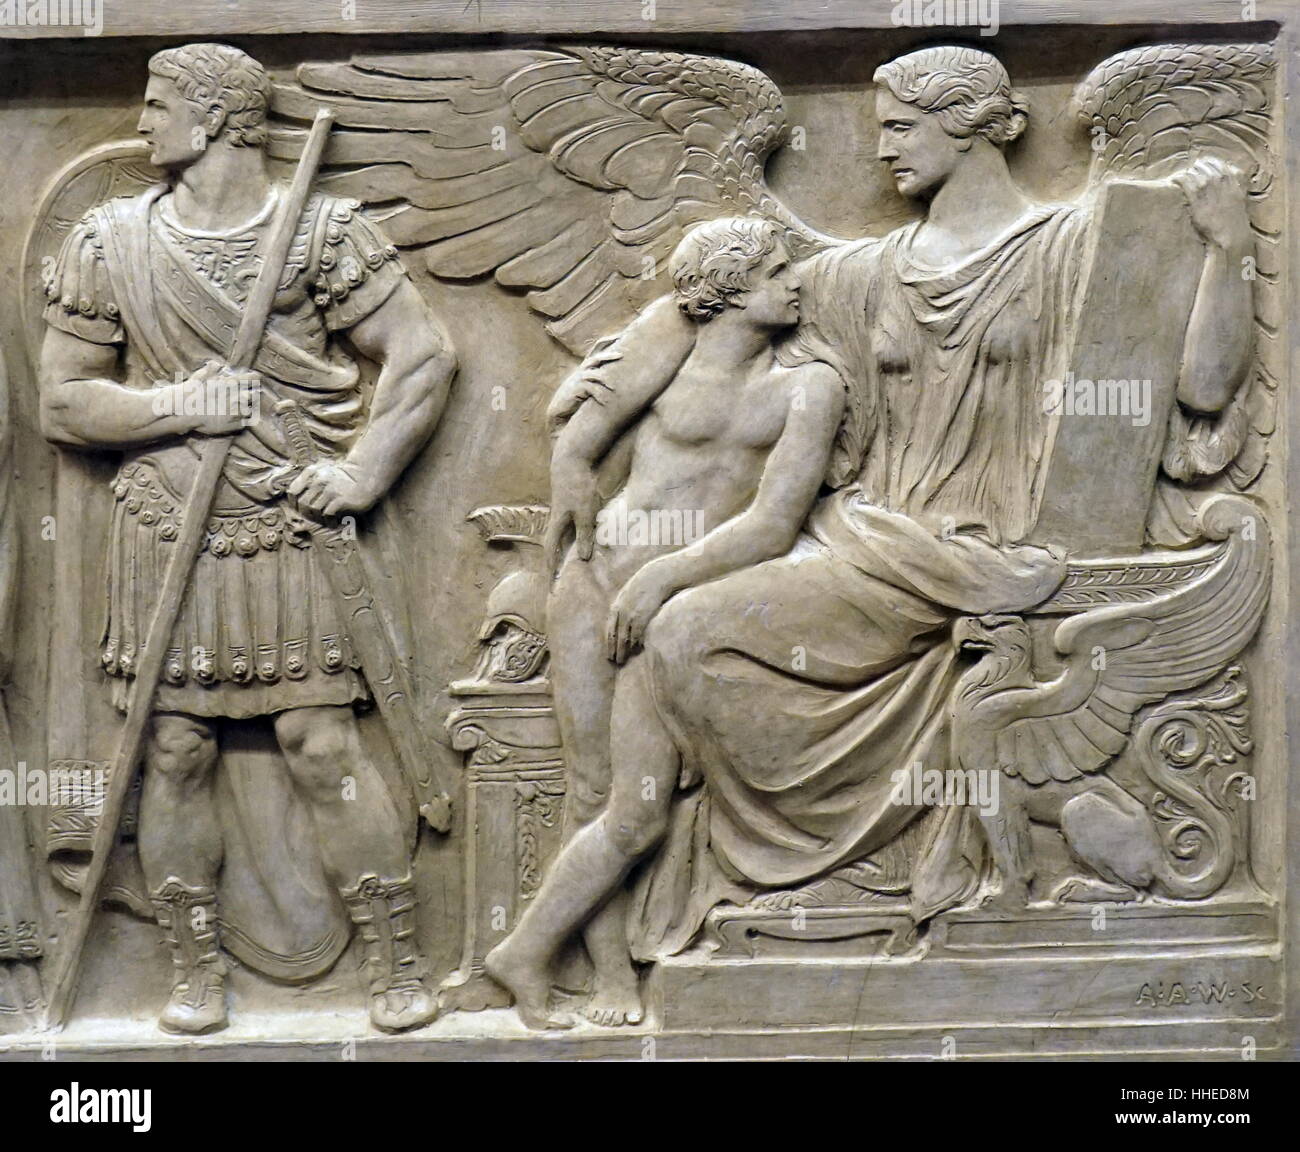 Relief mit der Darstellung der Abbildung von Octavian und die Muse der Geschichte. Octavian bekannt als Augustus (63 v. Chr. - 14 v. Chr.) war der Gründer des Römischen Imperiums und seiner ersten Kaiser, der von 27 v. Chr. bis zu seinem Tod. US Supreme Court, Washington DC. USA. Stockfoto